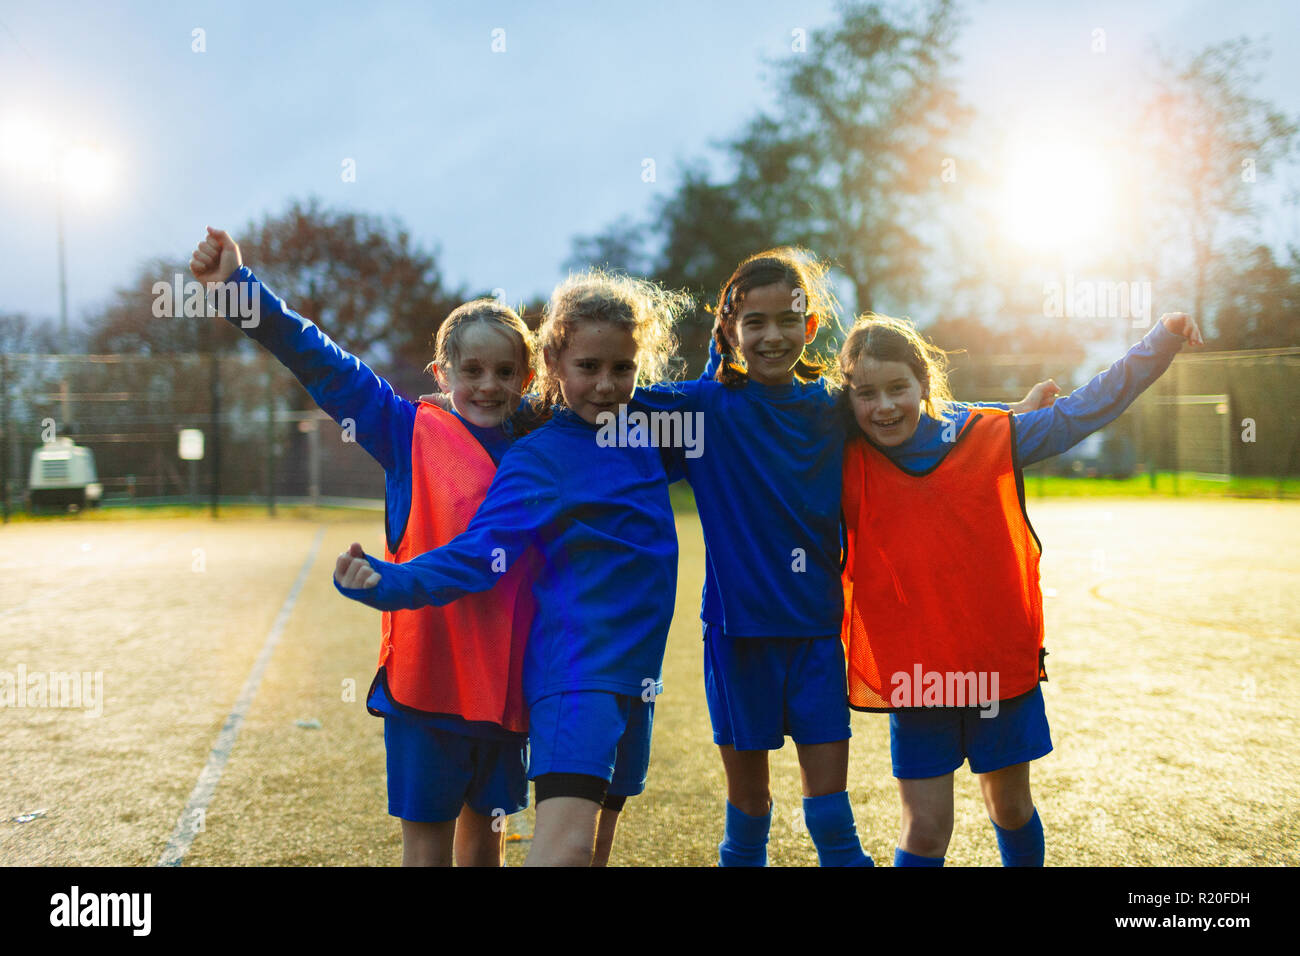 Équipe féminine de soccer Portrait confiant cheering on field Banque D'Images